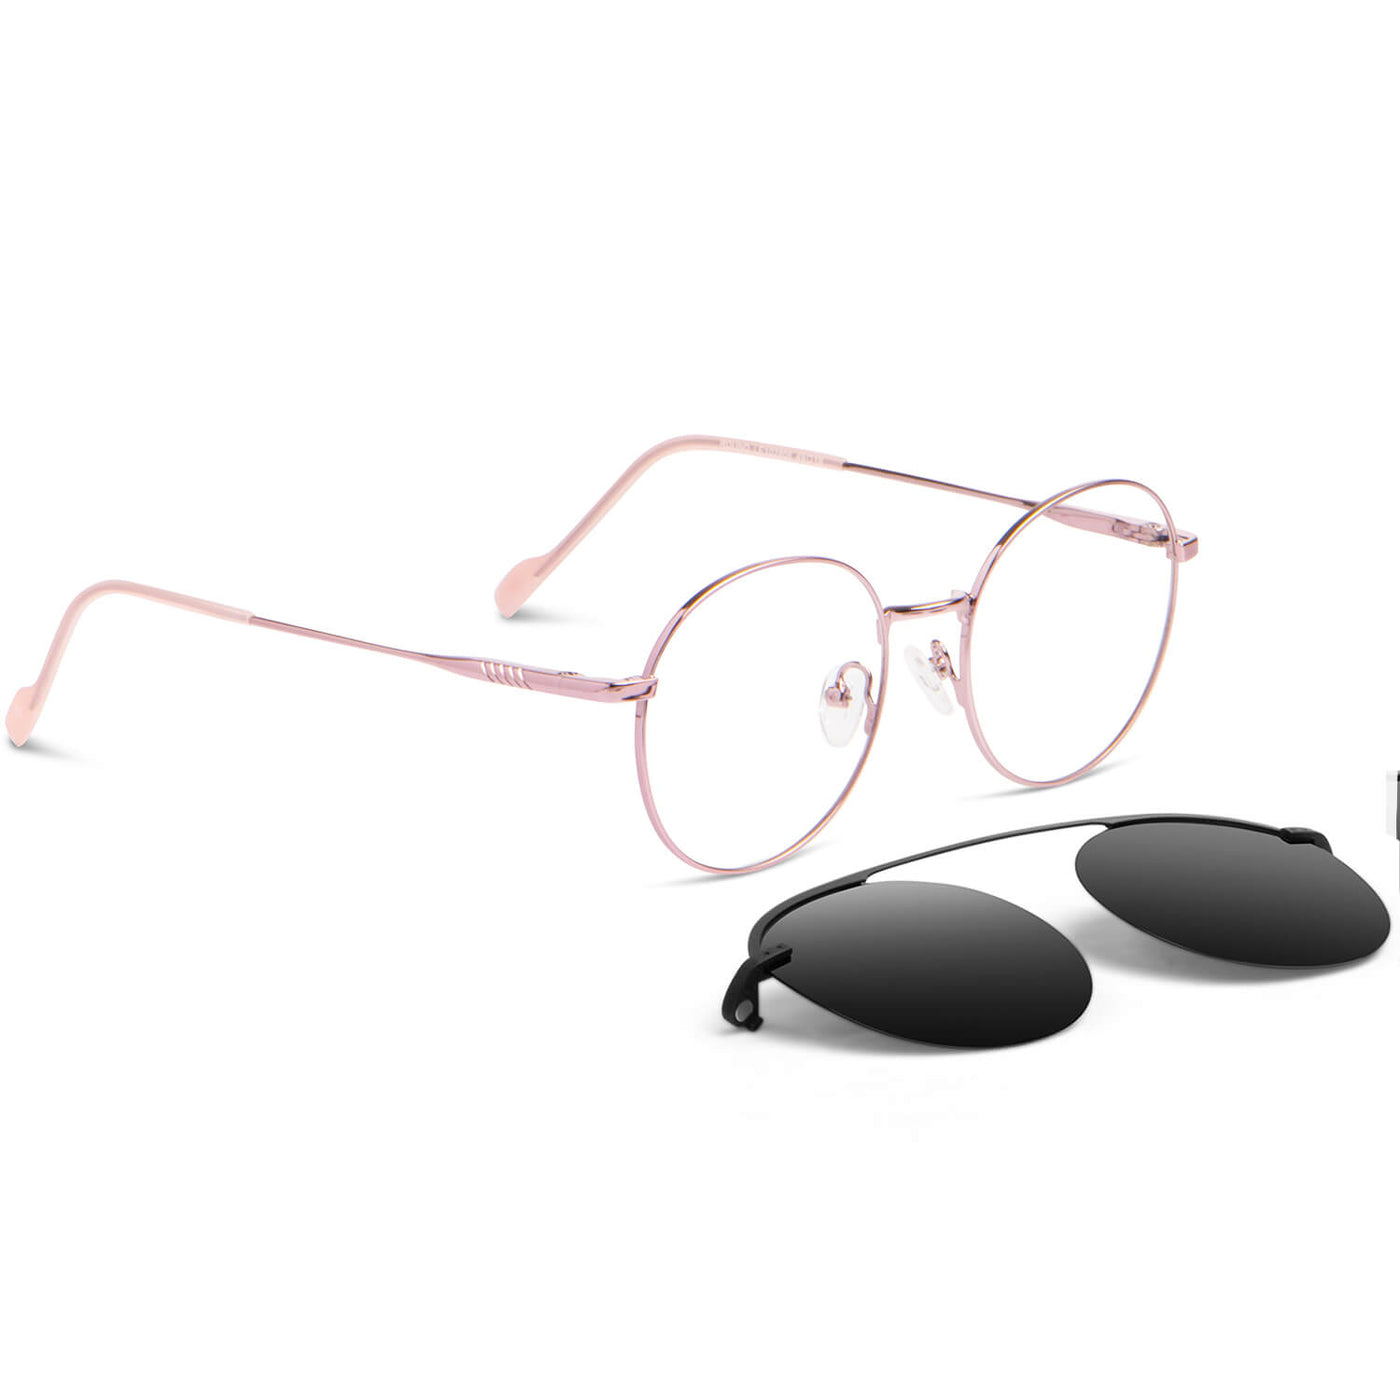 anteojos o marcos opticos redondos de color rosado con sobre lente clip sol iman polarizado para hombre y mujer de color barbie rosado vista angulada